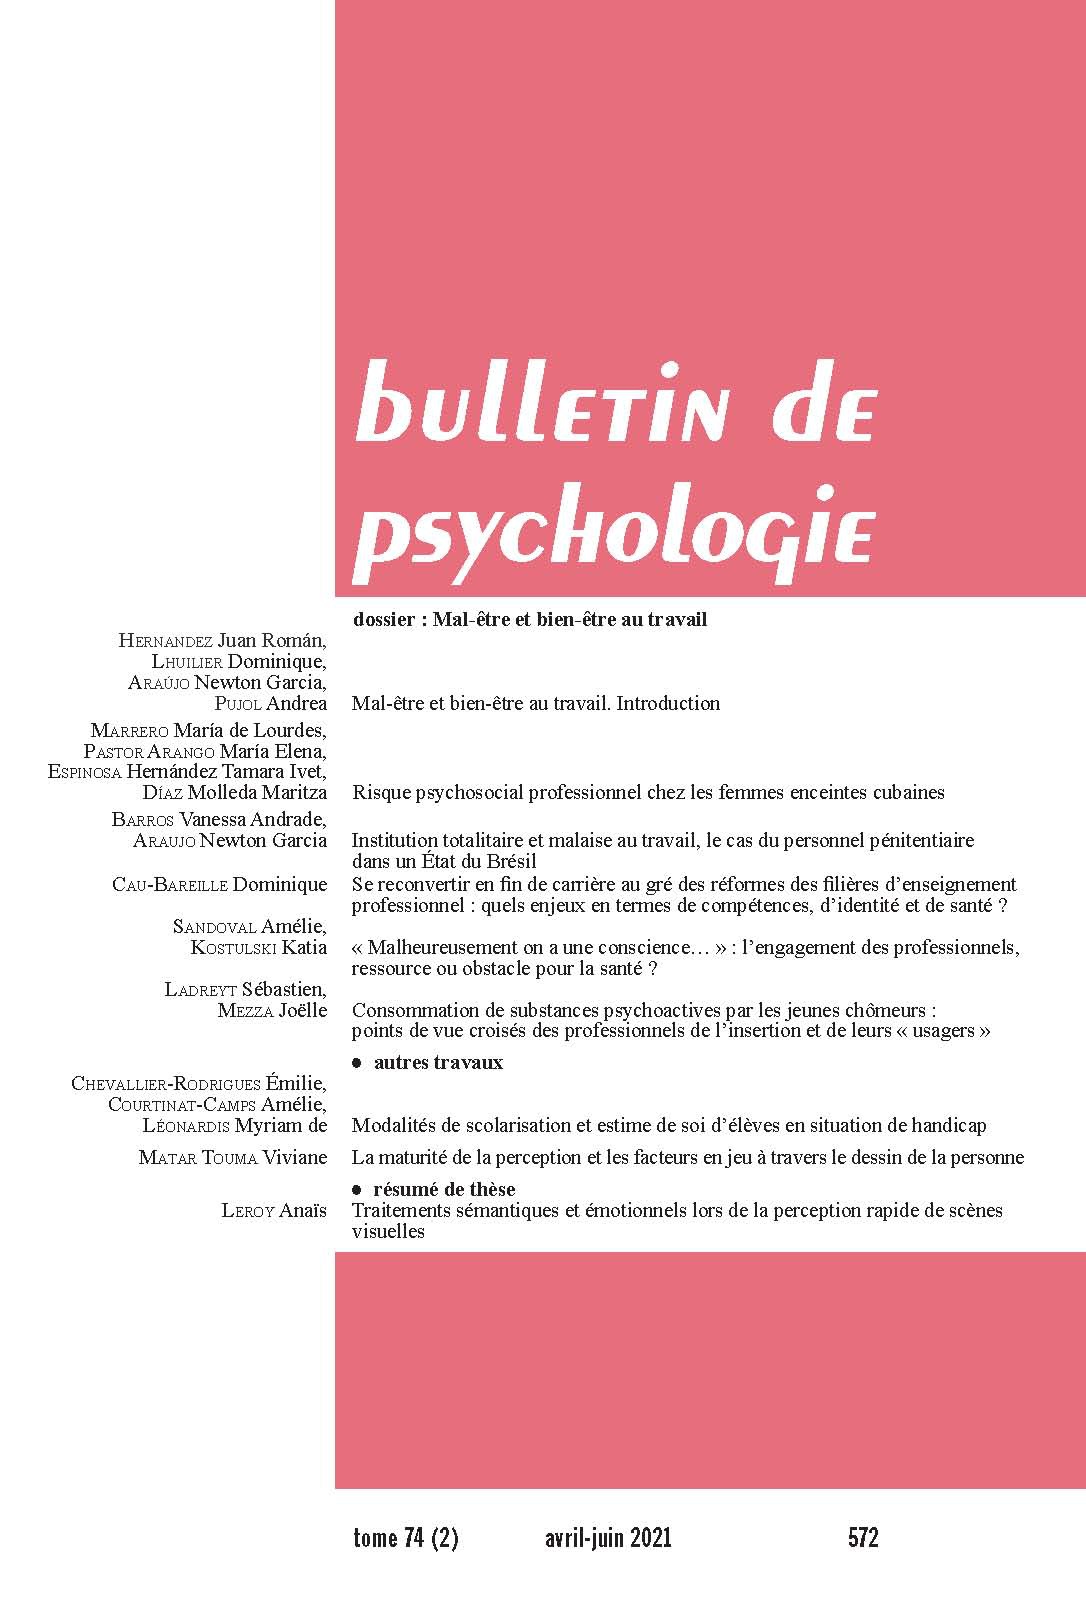 Bulletin de psychologie. Dossier « Mal-être et bien-être au travail »